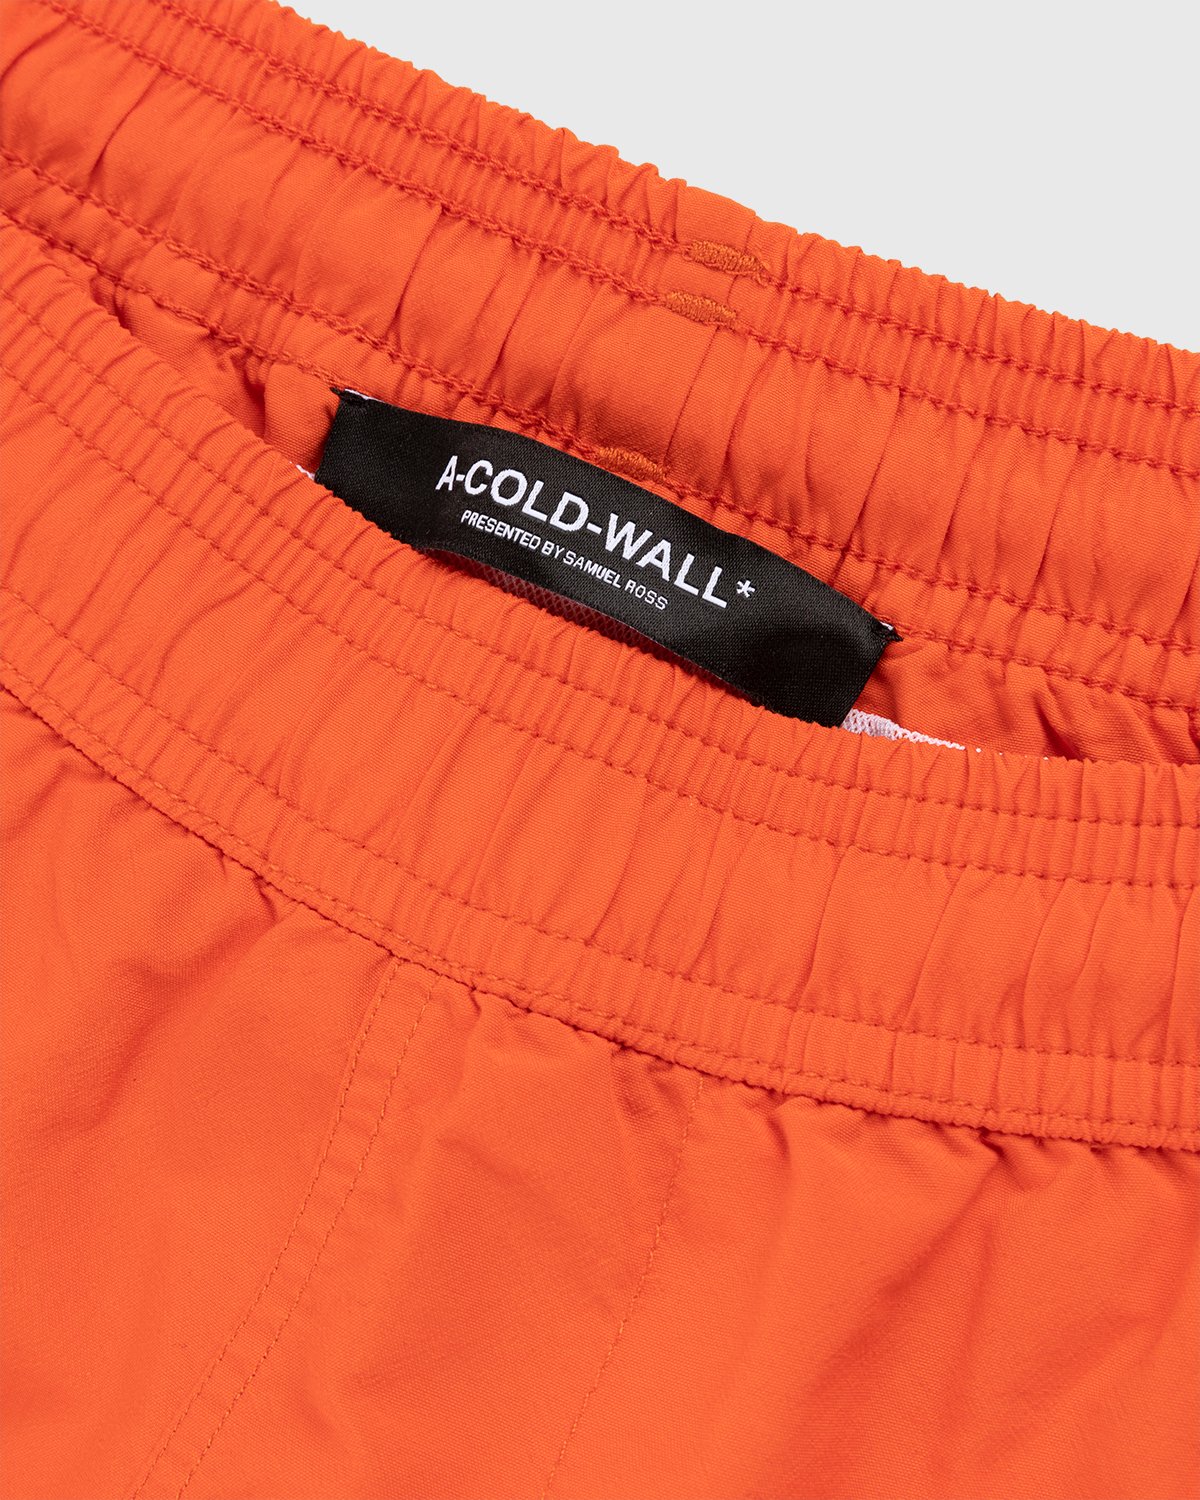 A-Cold-Wall* - Natant Nylon Short Rich Orange - Clothing - Orange - Image 5